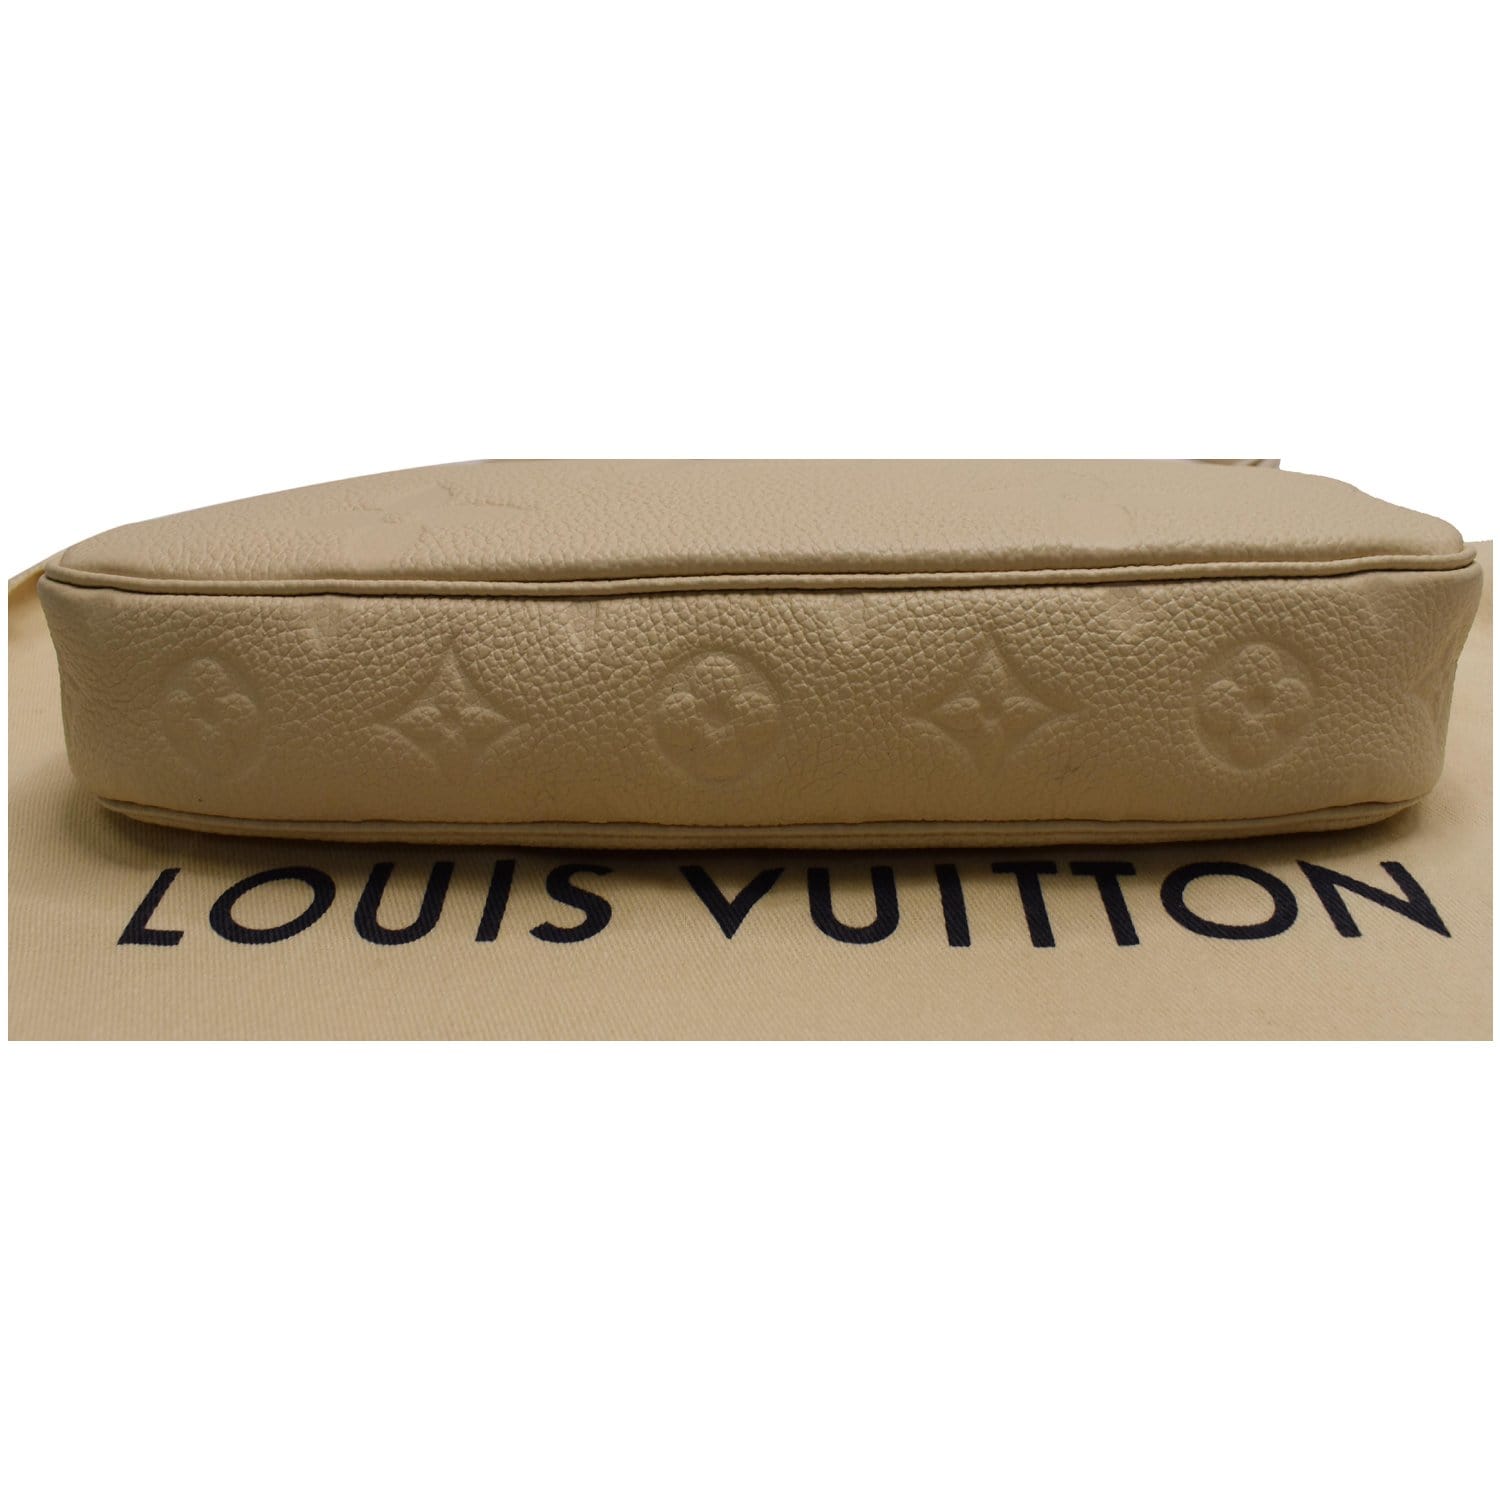 New hot item 💥 LV multi pochette 😍 📸@carodaur #LV #lvmultipochette  #lvbag #louisvuitton #PersonalS…